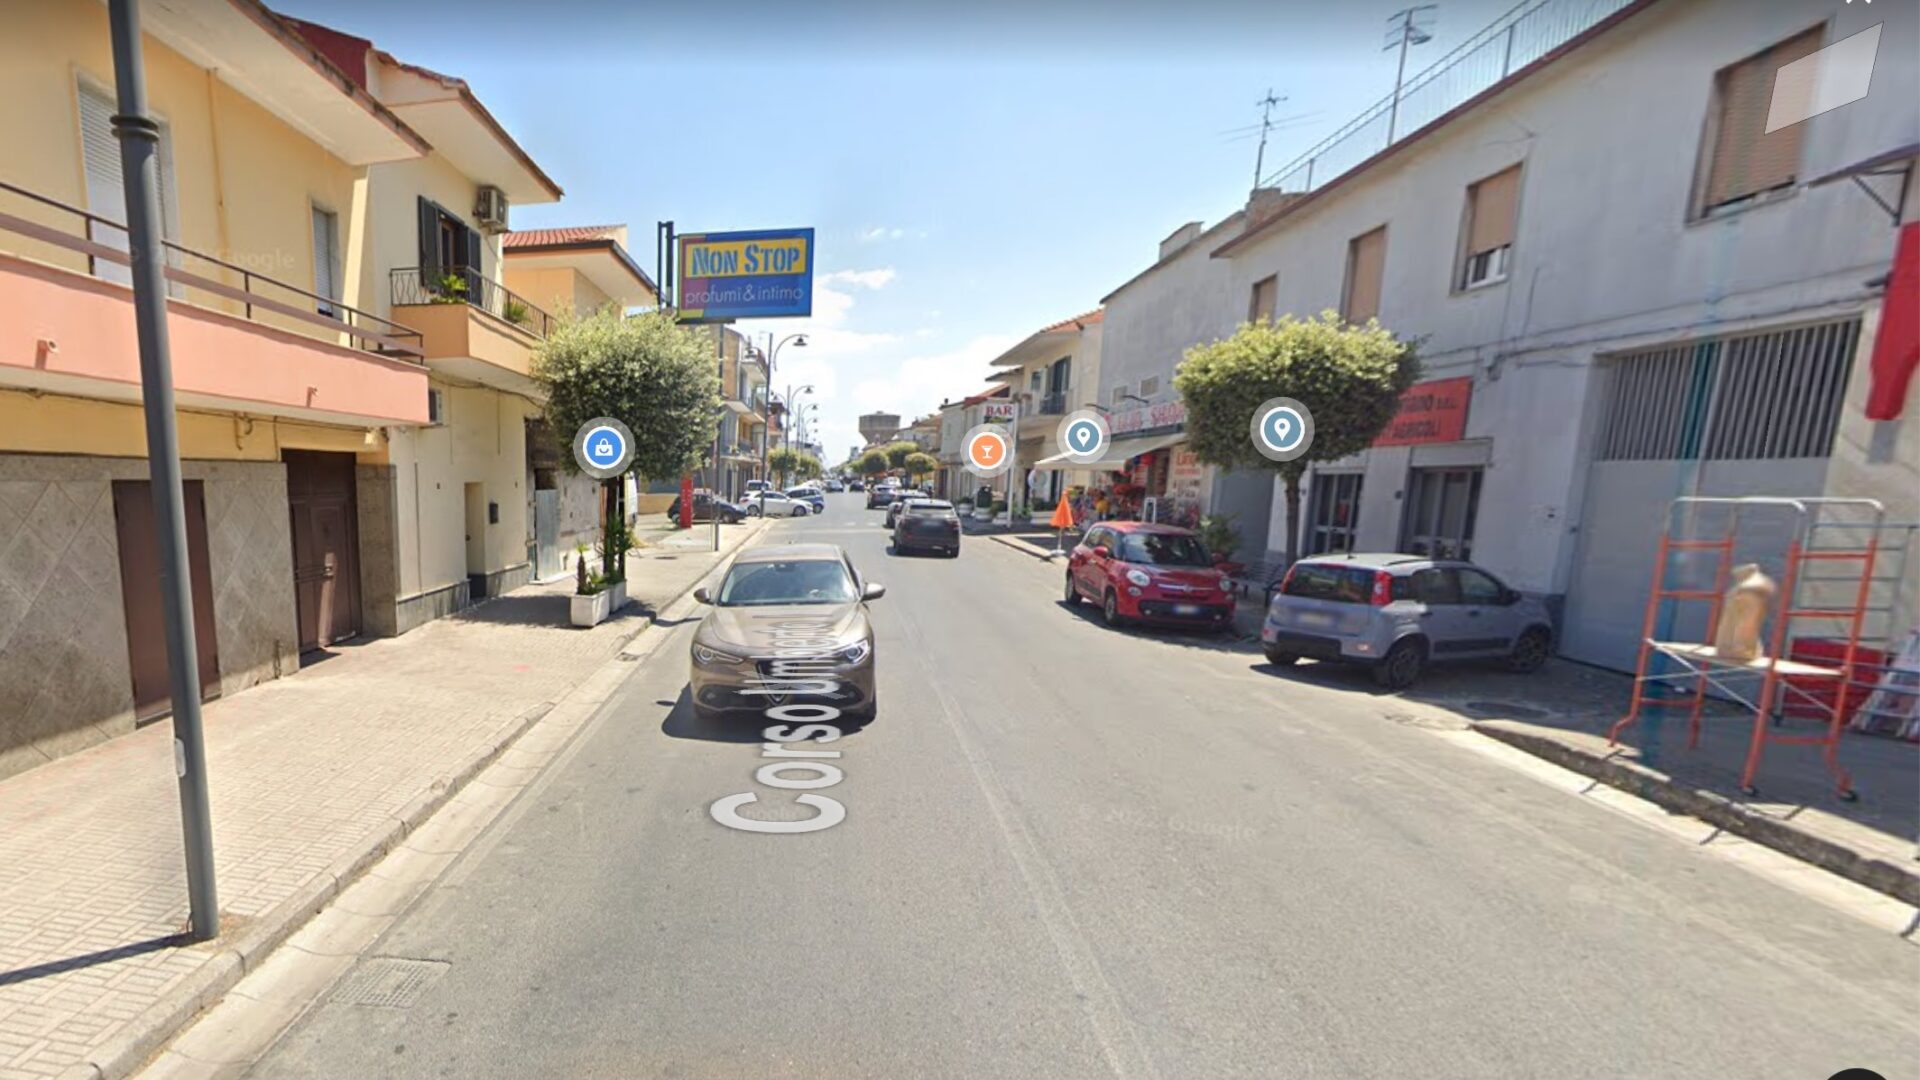 A Casal di Principe, in provincia di Caserta, un giovane immigrato di origine africana è stato investito ed ucciso da un'auto.